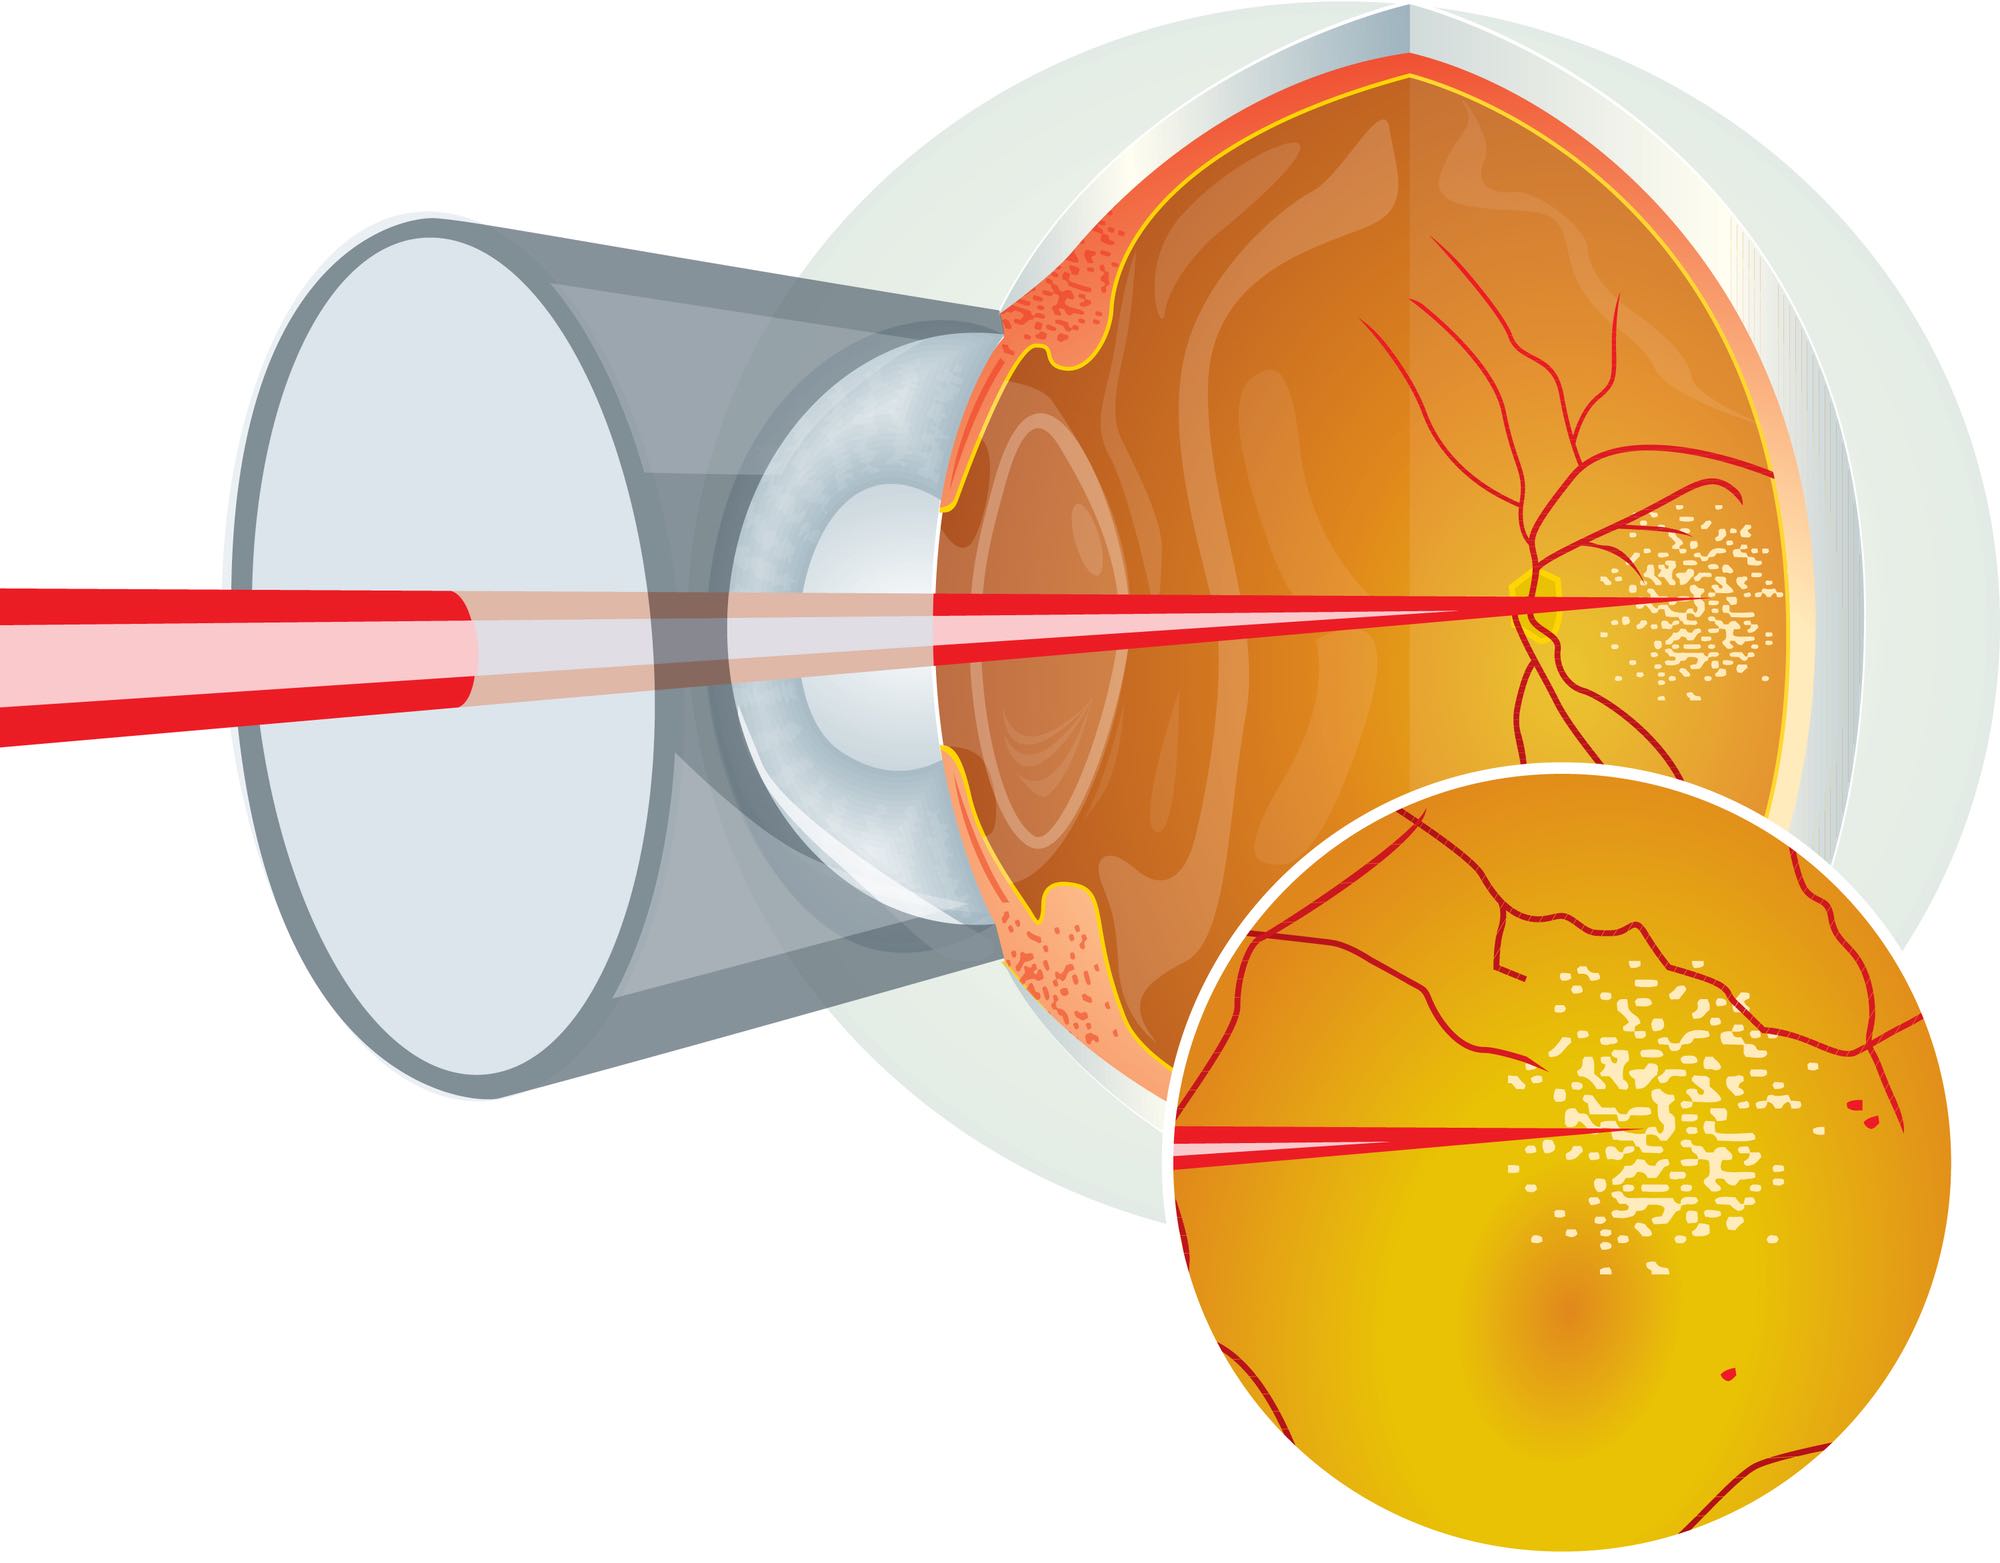 Глаз после лазерной коагуляции сетчатки. Лазерная коагуляция сетчатки глаза. Лазерокоагуляция сетчатки. Диабетическая ретинопатия лазерная коагуляция. Периферическая лазеркоагуляция сетчатки ППЛК.